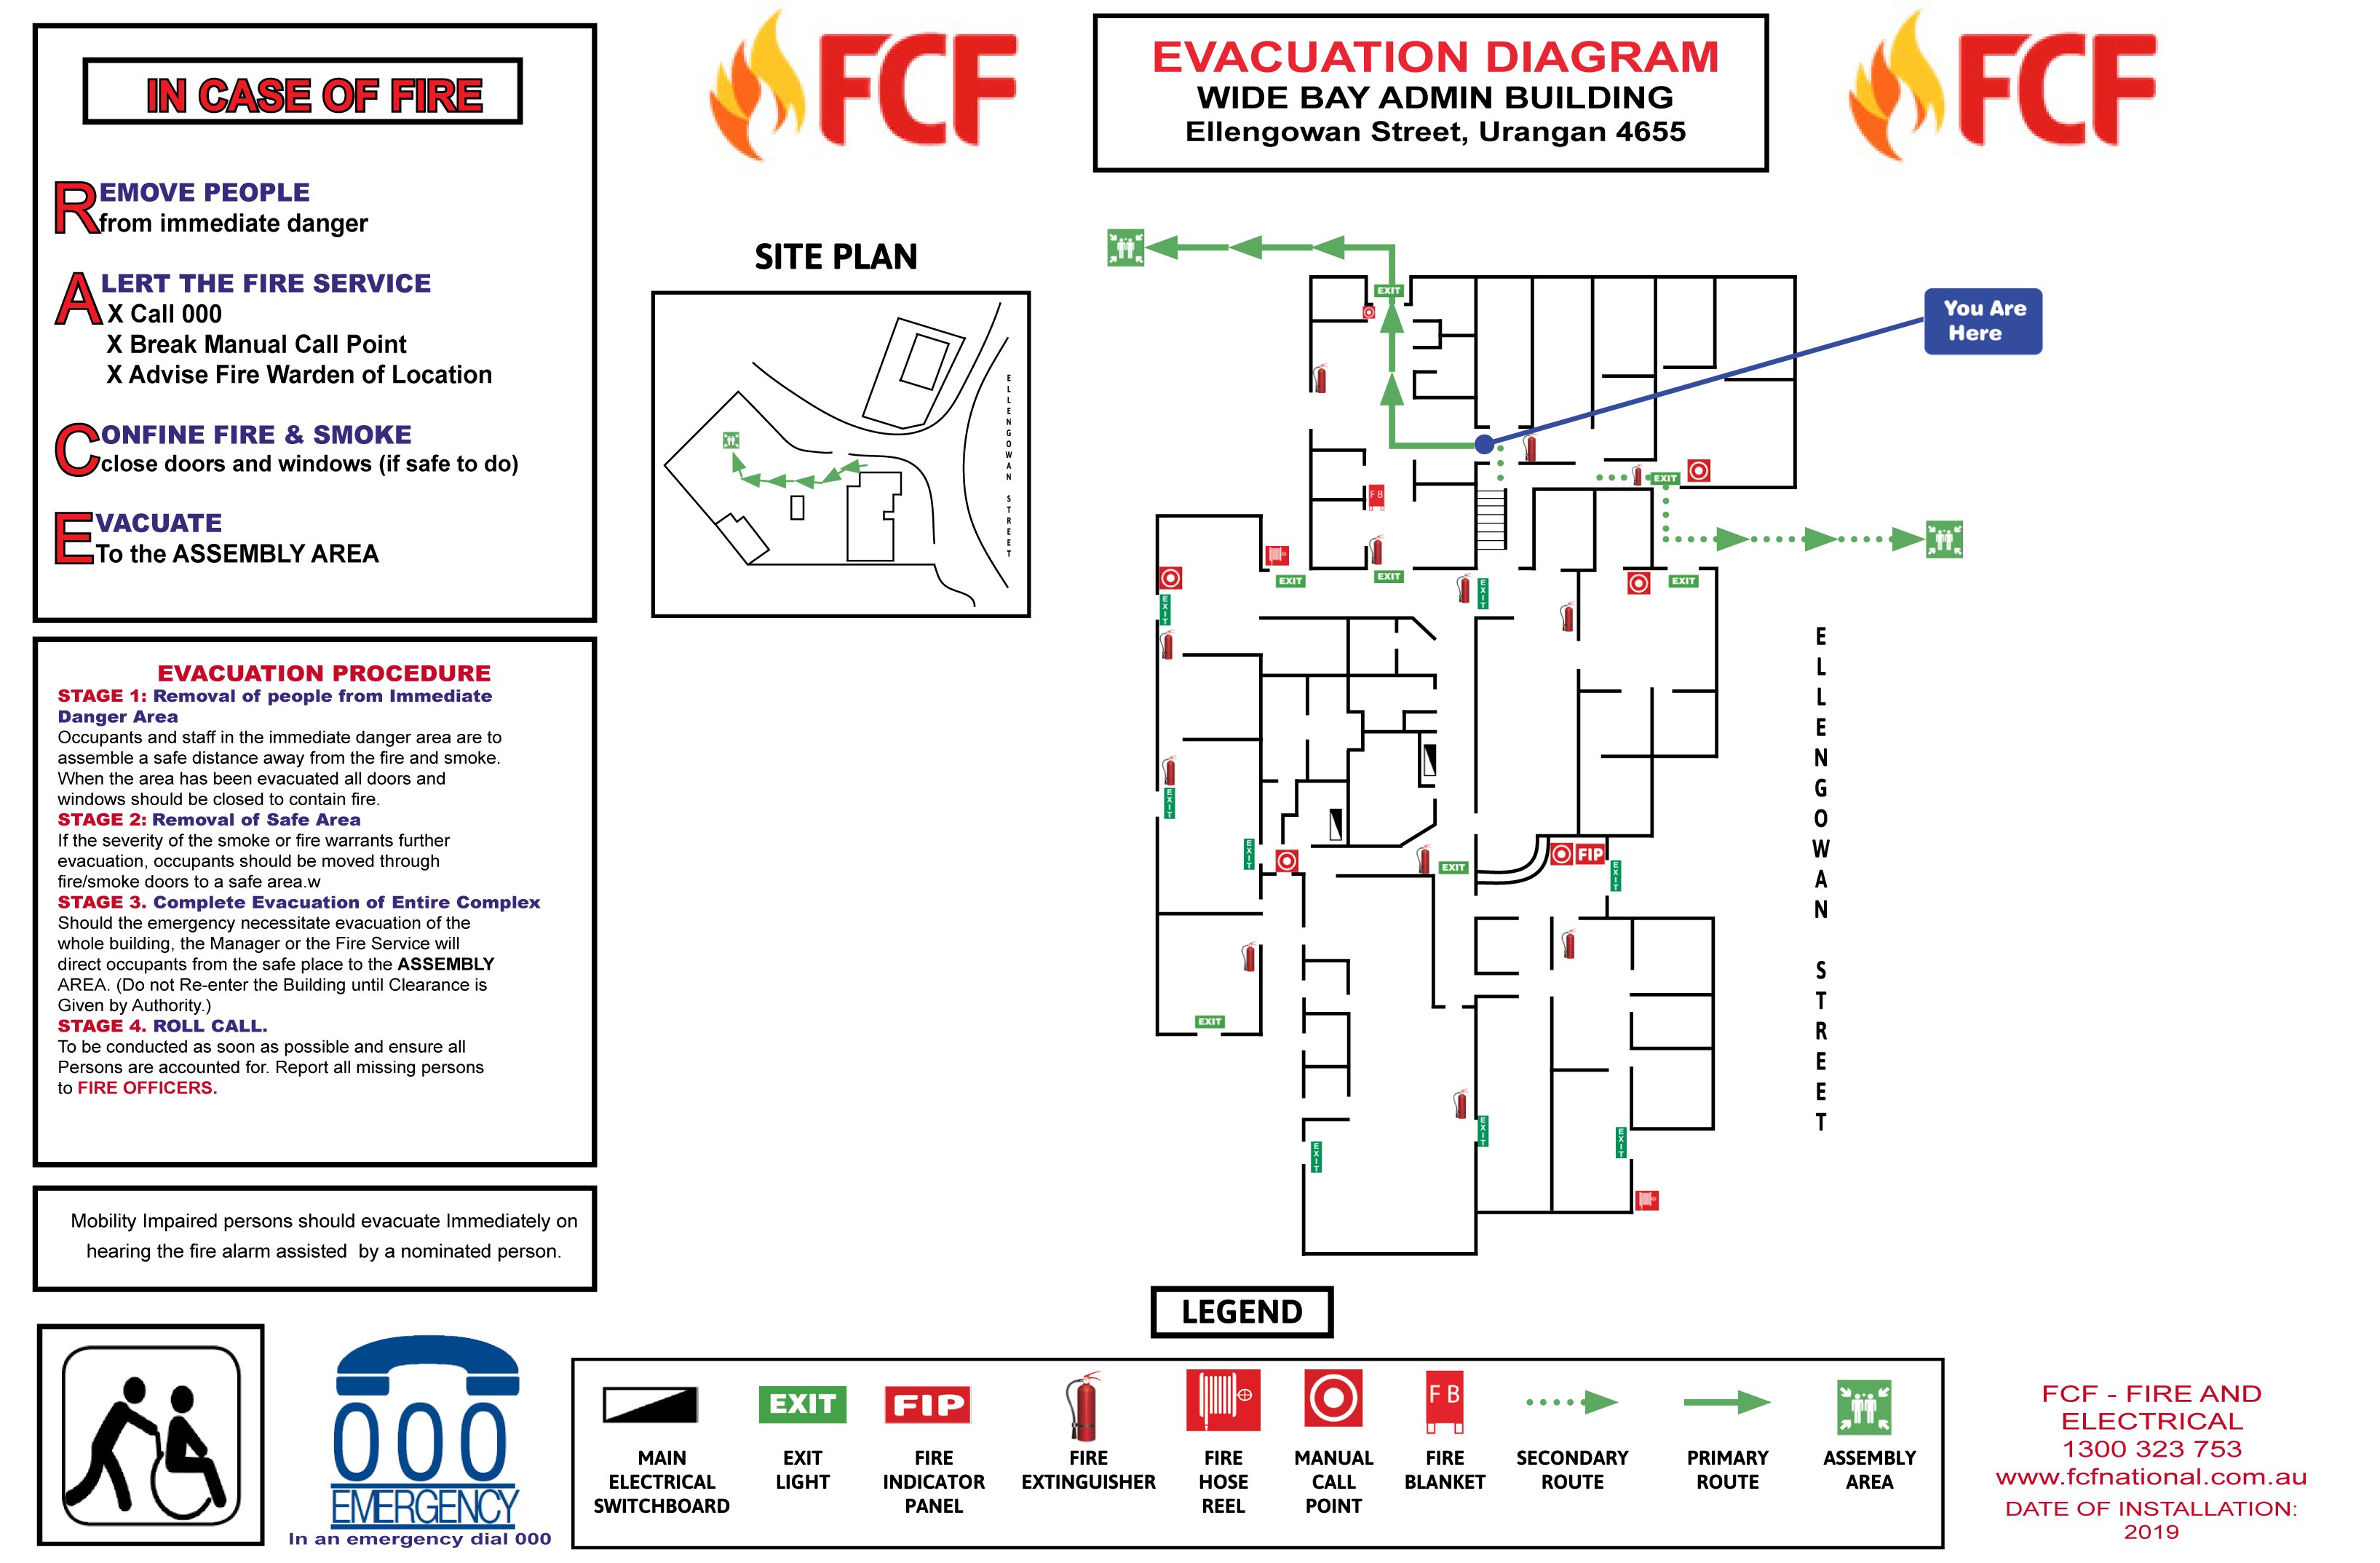 Display Fire Evacuation Diagrams